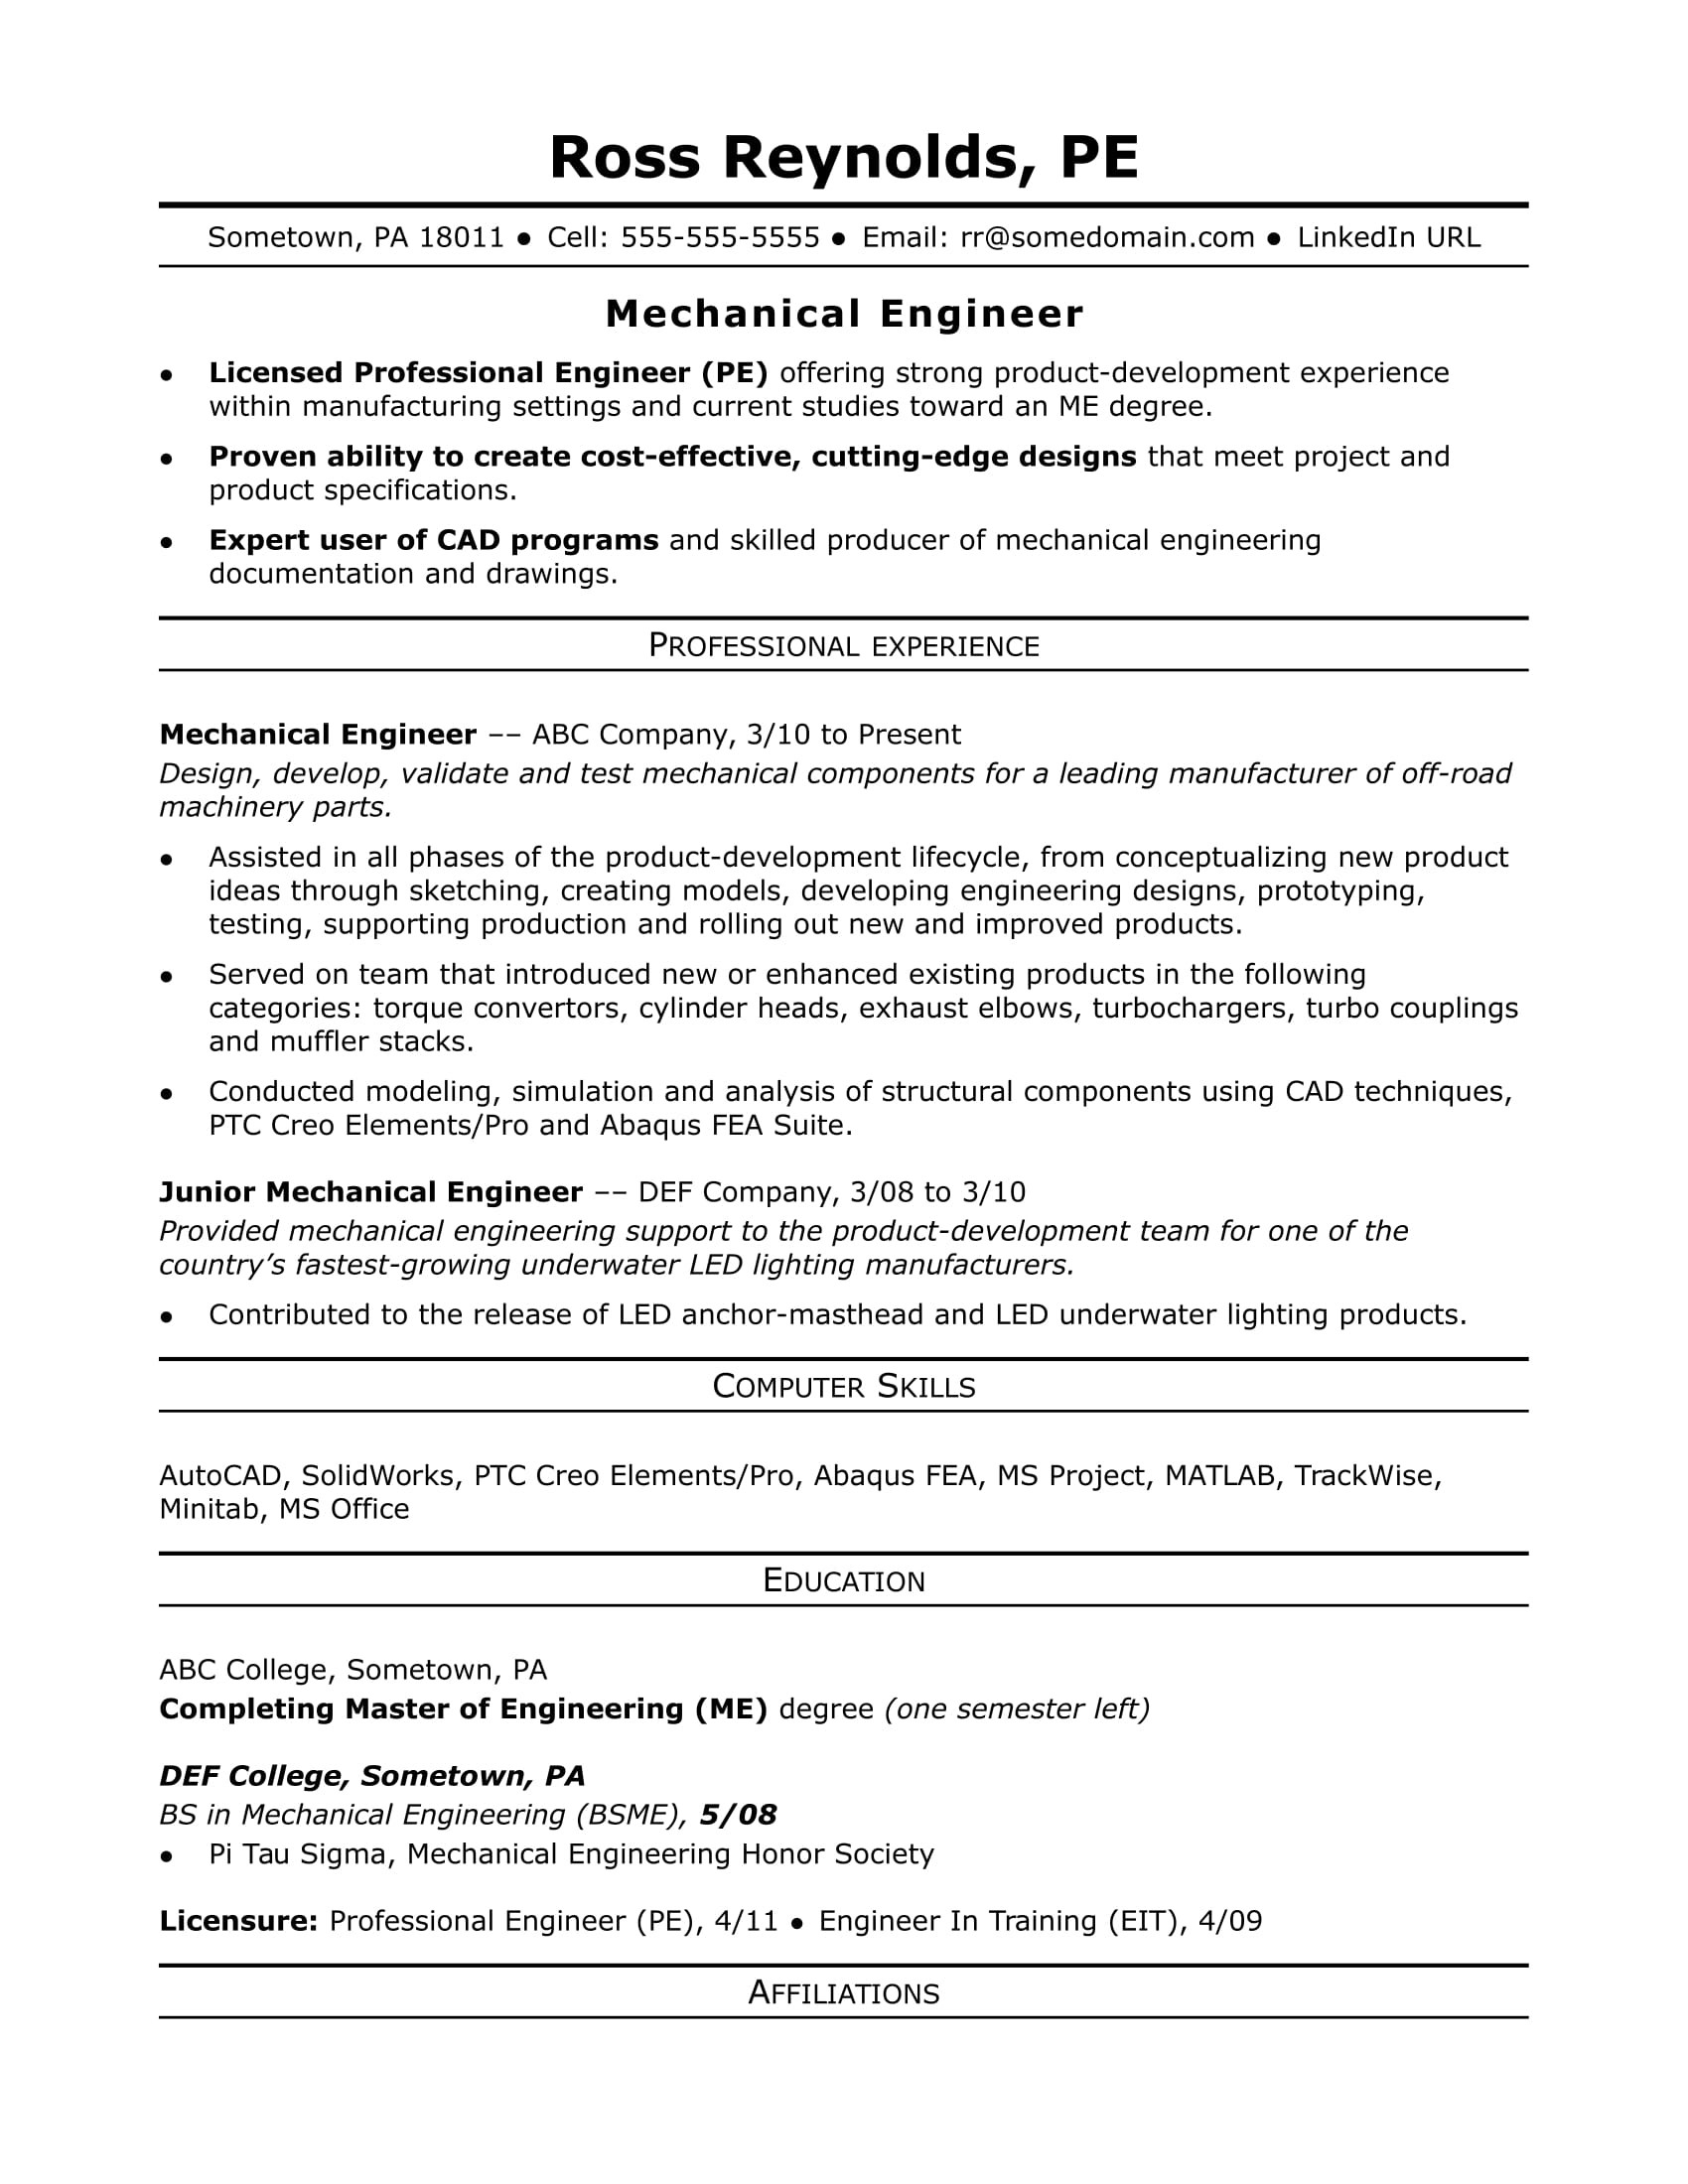 Sample Resume for Product Development Engineer Sample Resume for A Midlevel Mechanical Engineer Monster.com